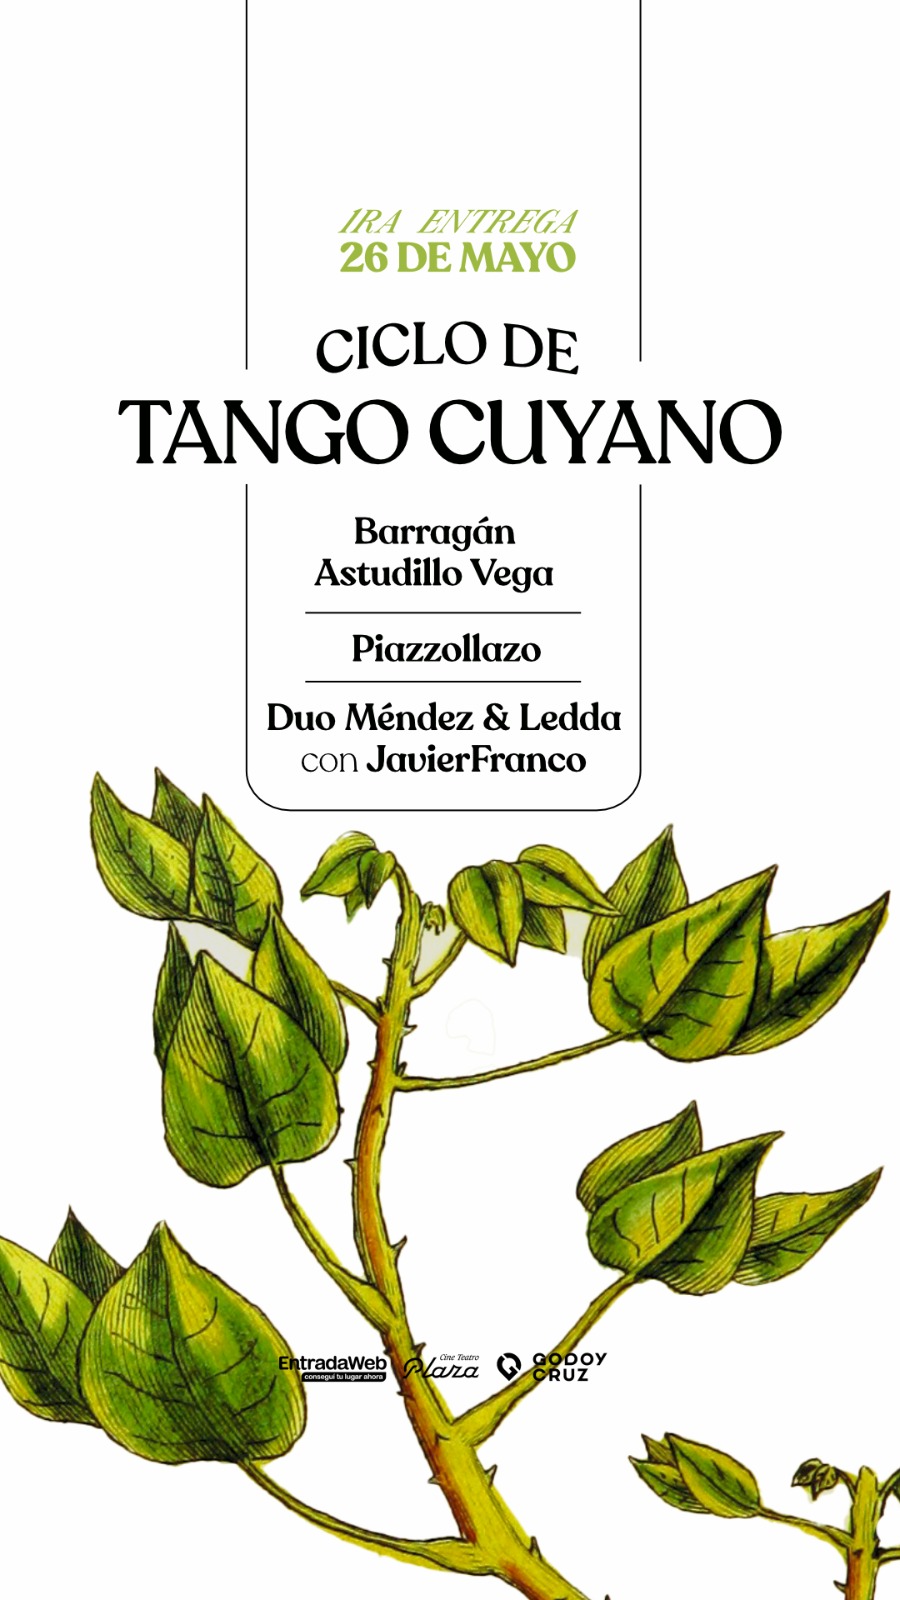 CICLO DE TANGO CUYANO